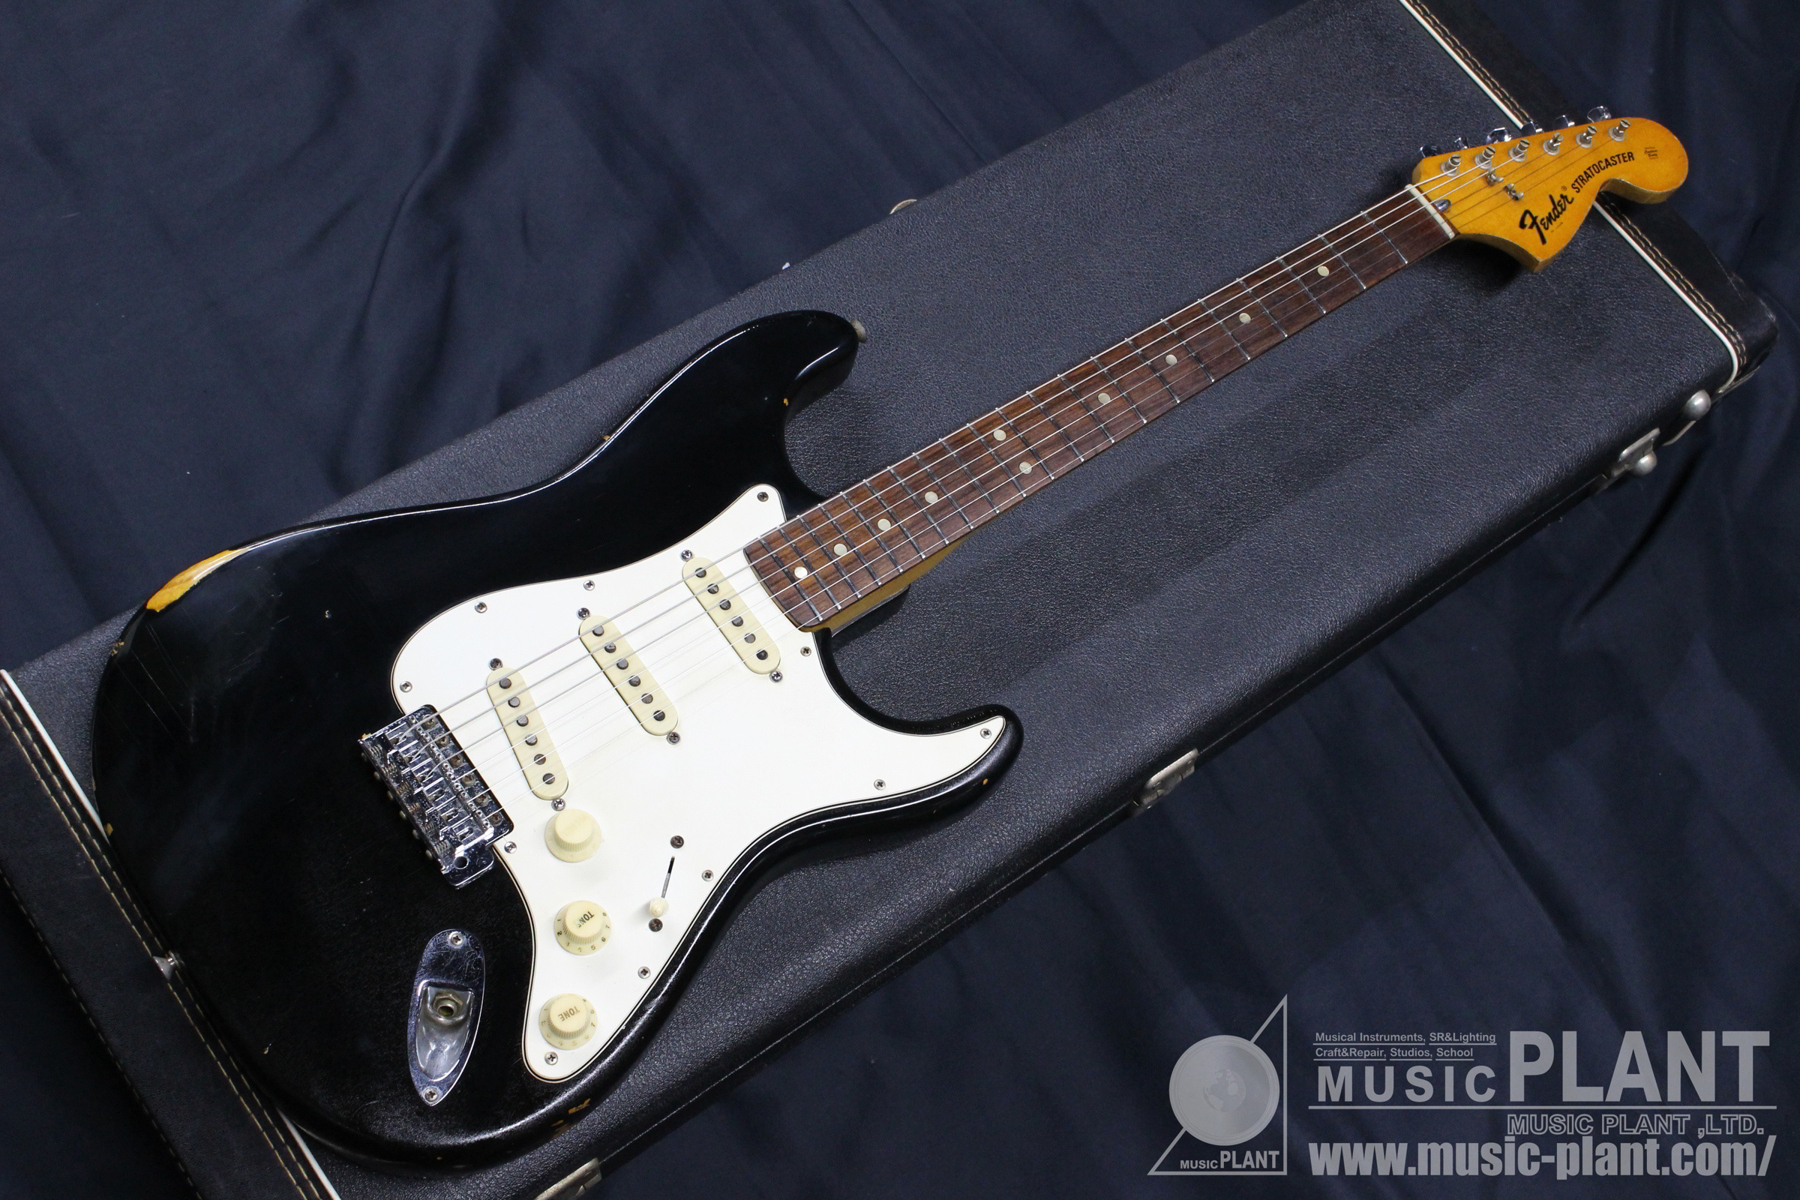 Fender USA ストラトキャスター1975 Stratocaster Black中古品()売却済みです。あしからずご了承ください